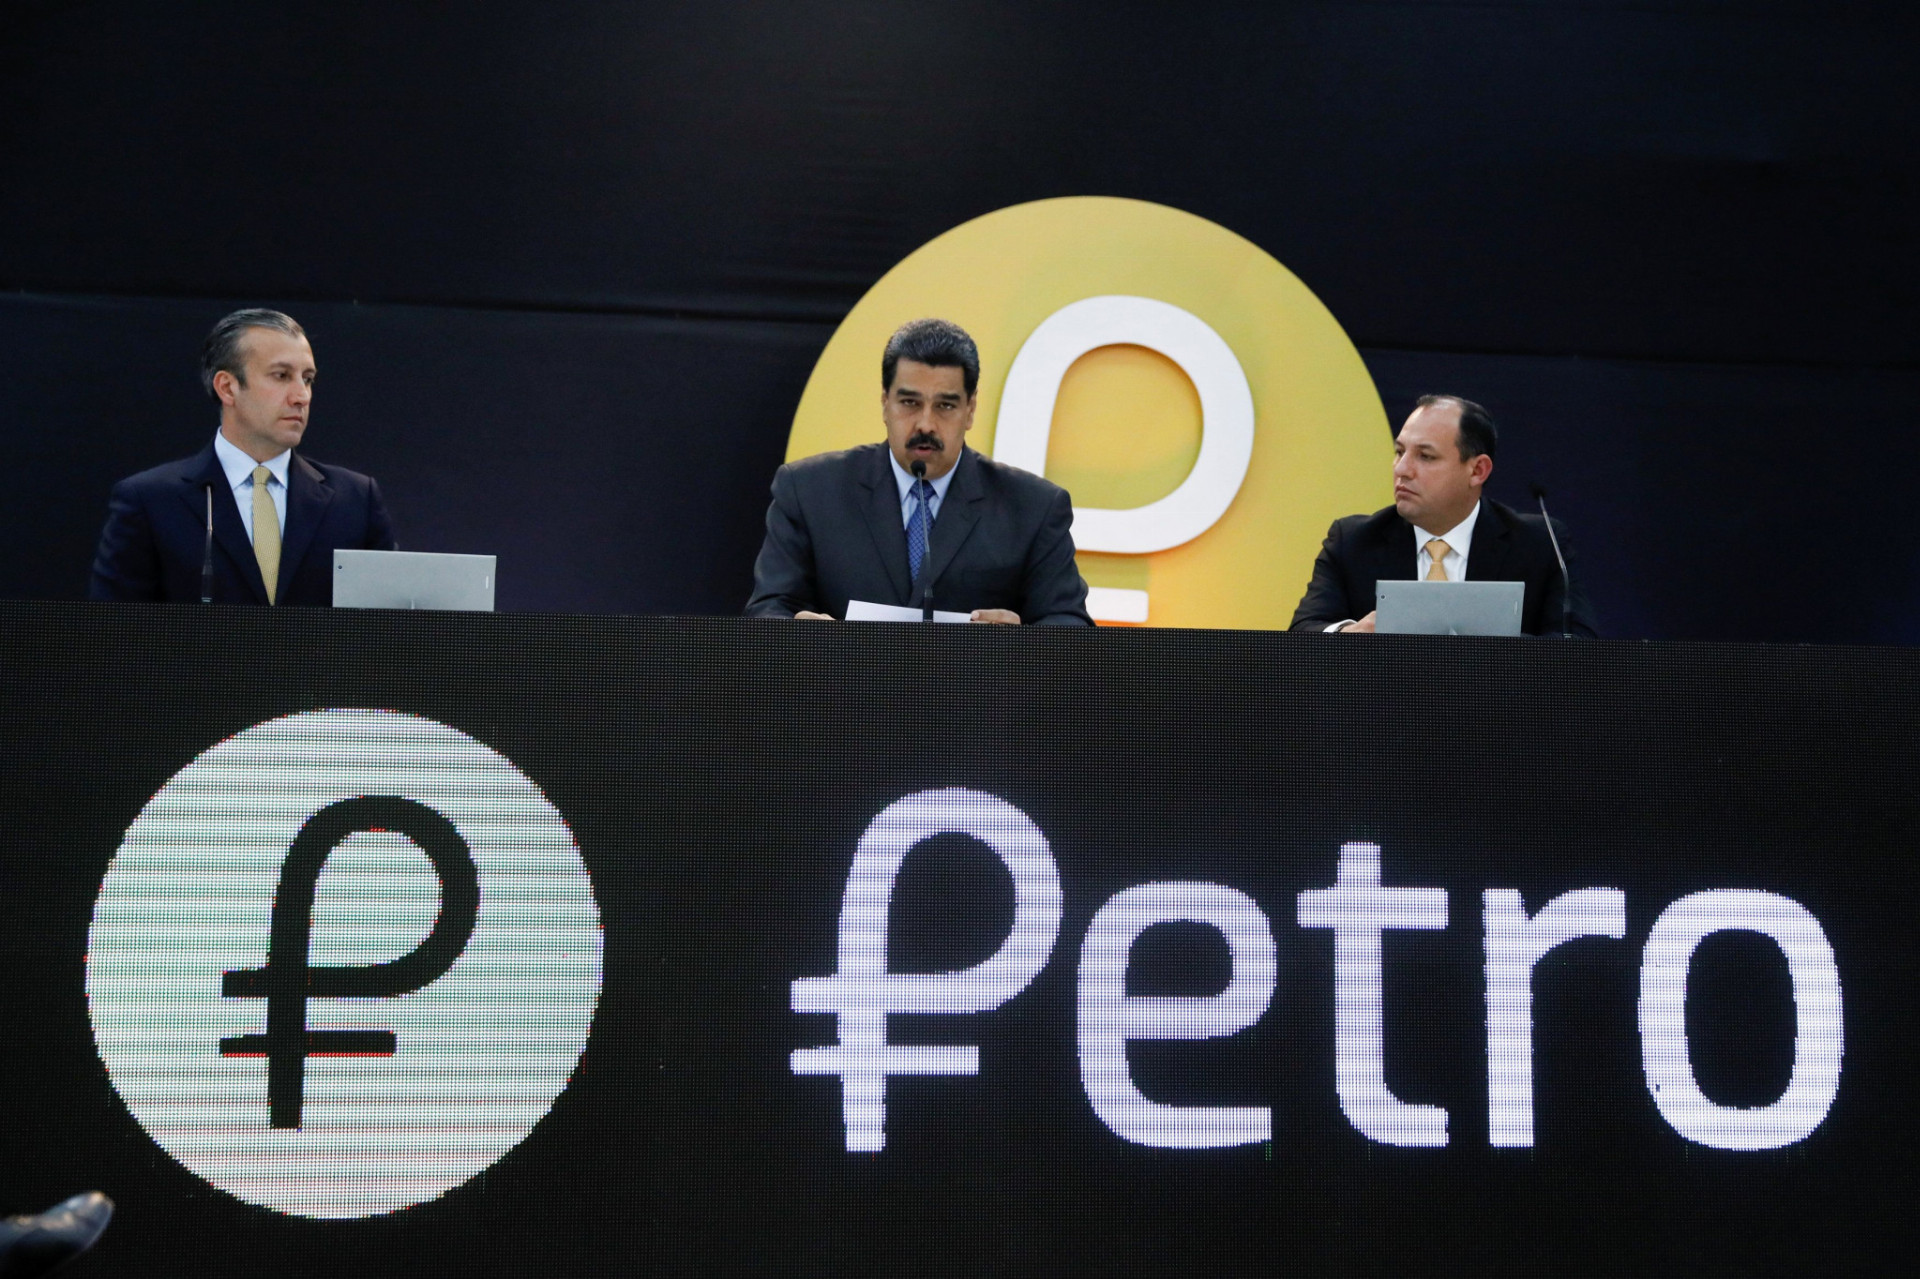 Vlastnú menu petro krytú ropou predstavil venezuelský líder Nicolás Maduro pred týždňom.